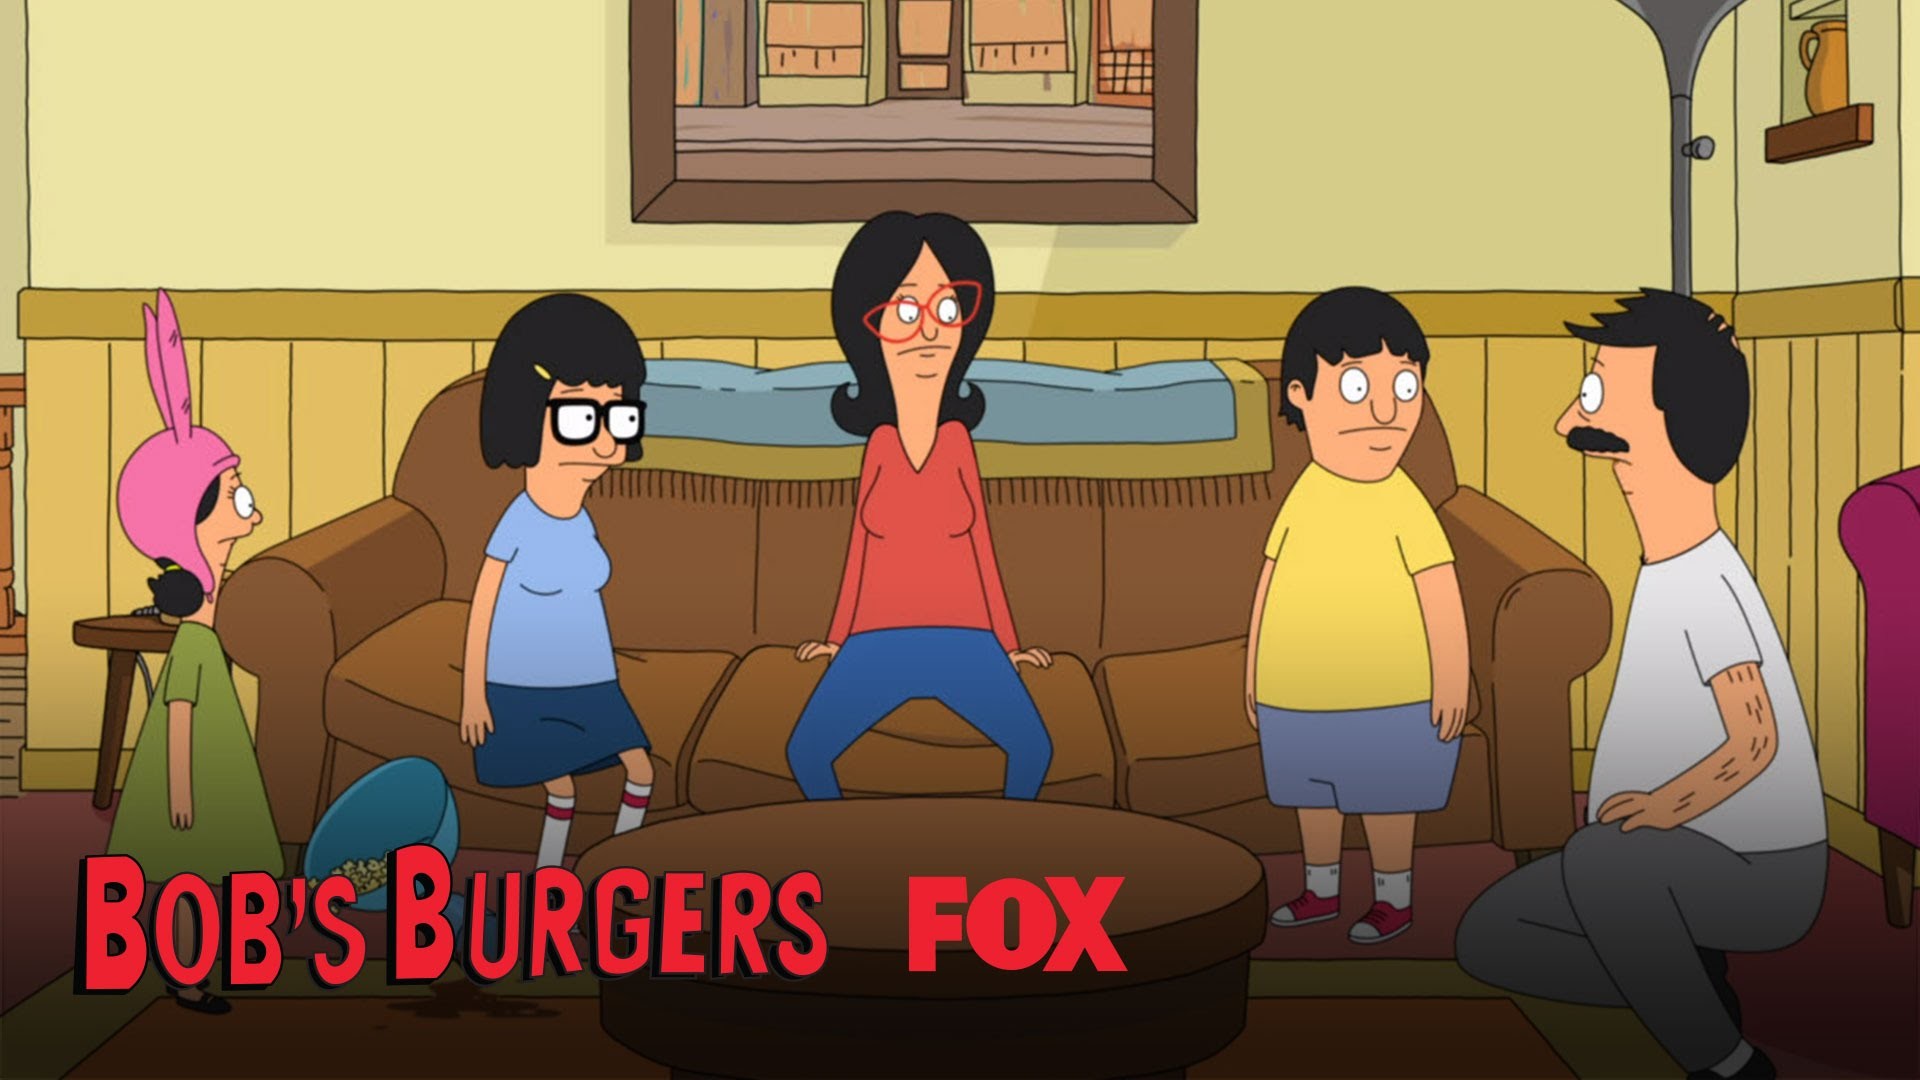 Funny Bobs Burgers Wallpaper - Cartoon , HD Wallpaper & Backgrounds